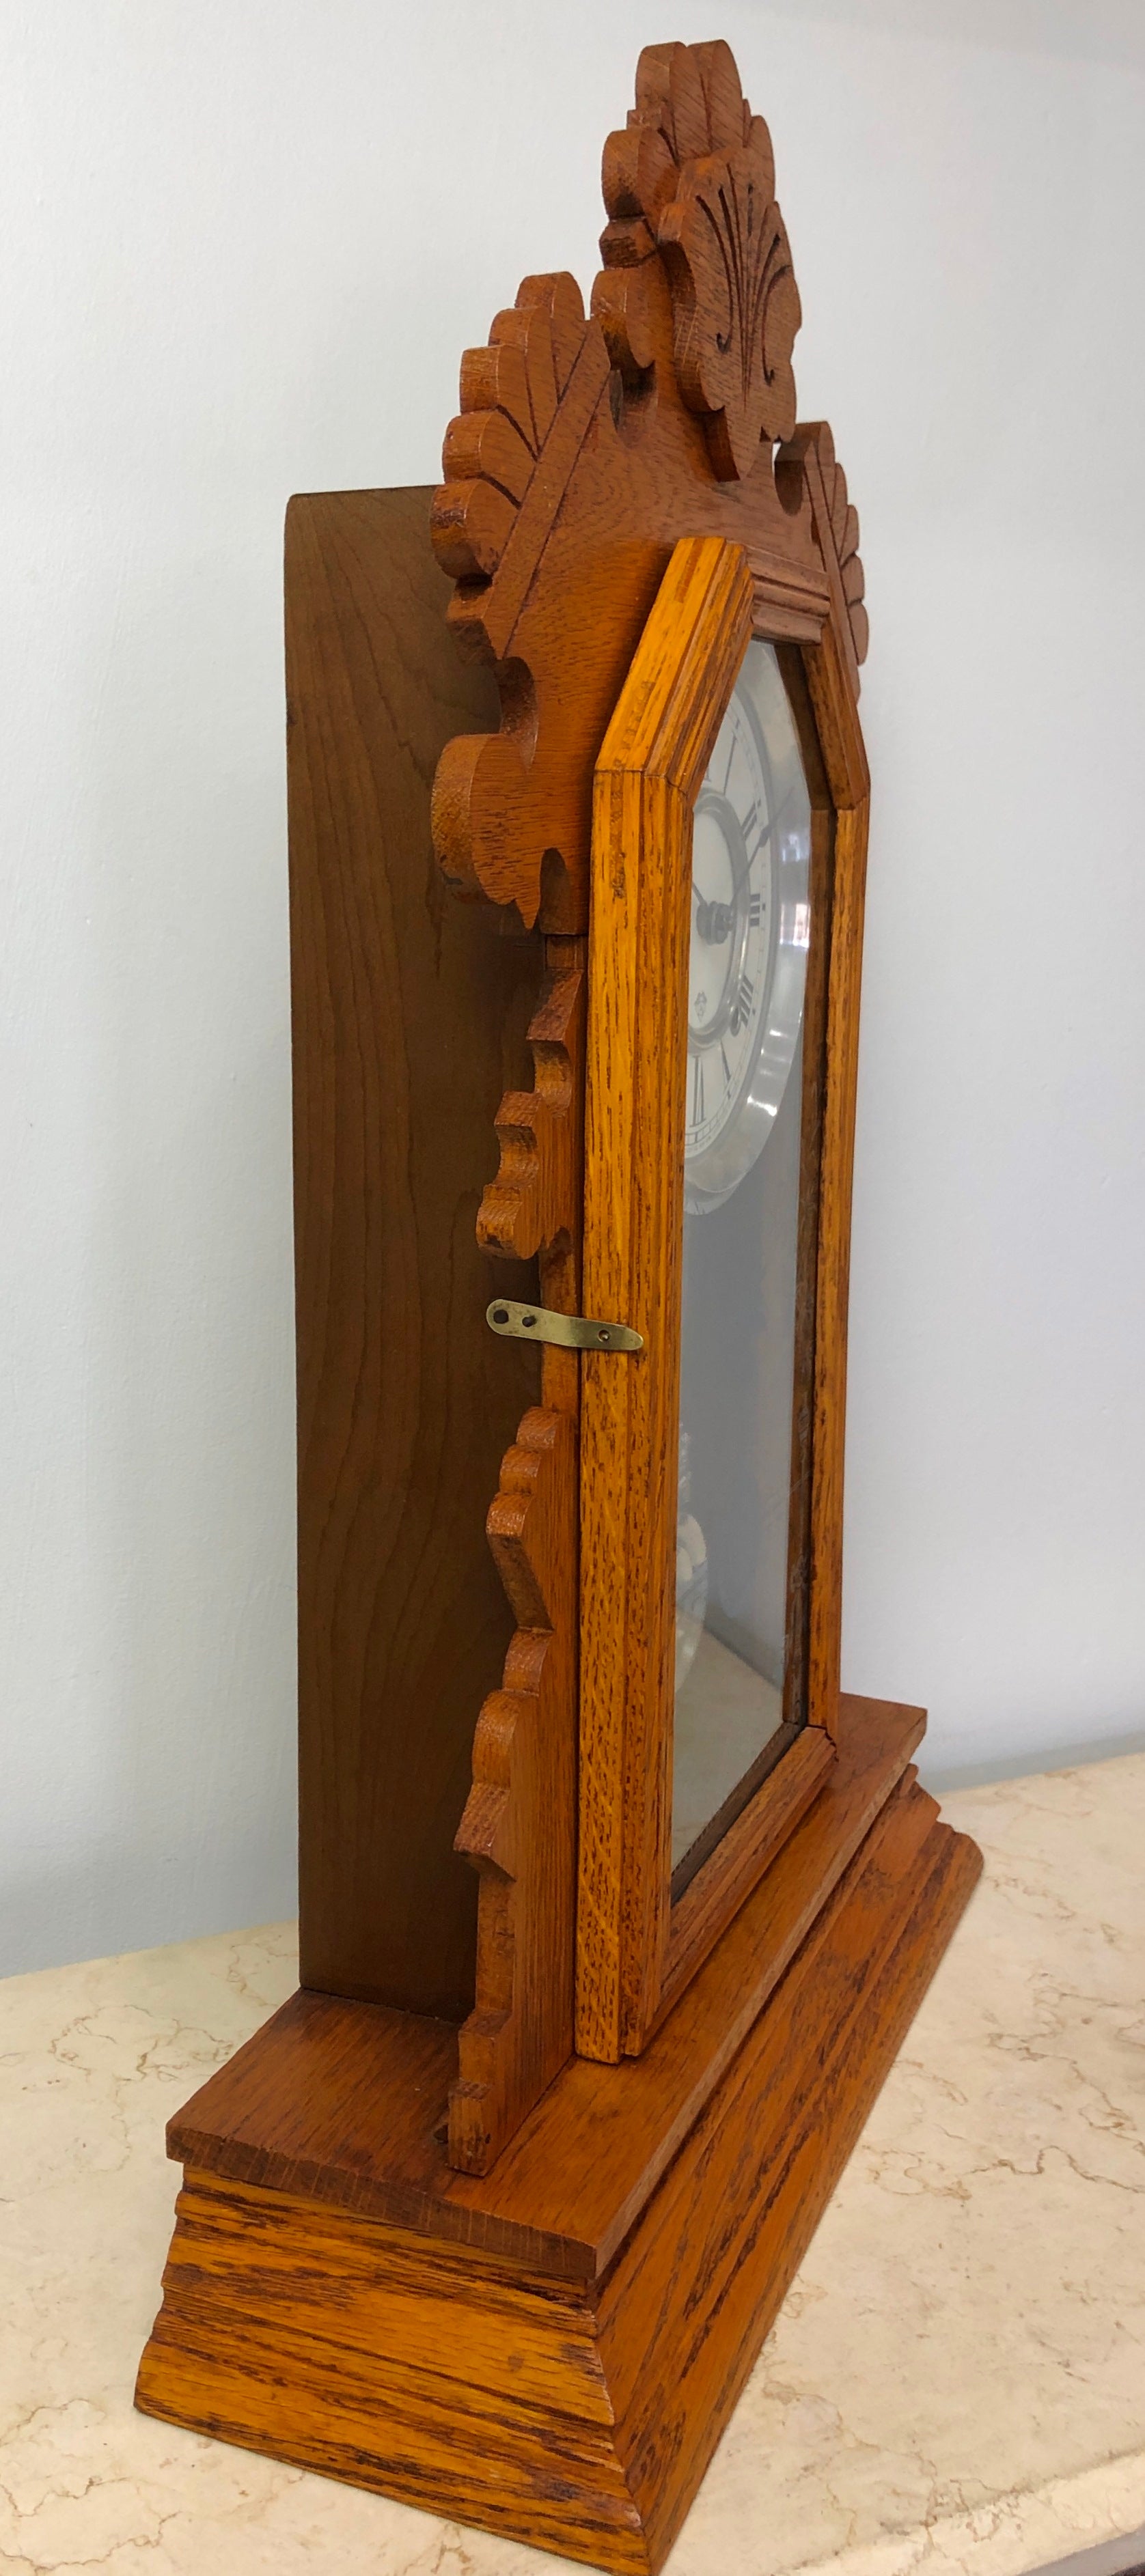 Antique ANSONIA U.S.A Cottage Mantel Clock  | eXibit collection